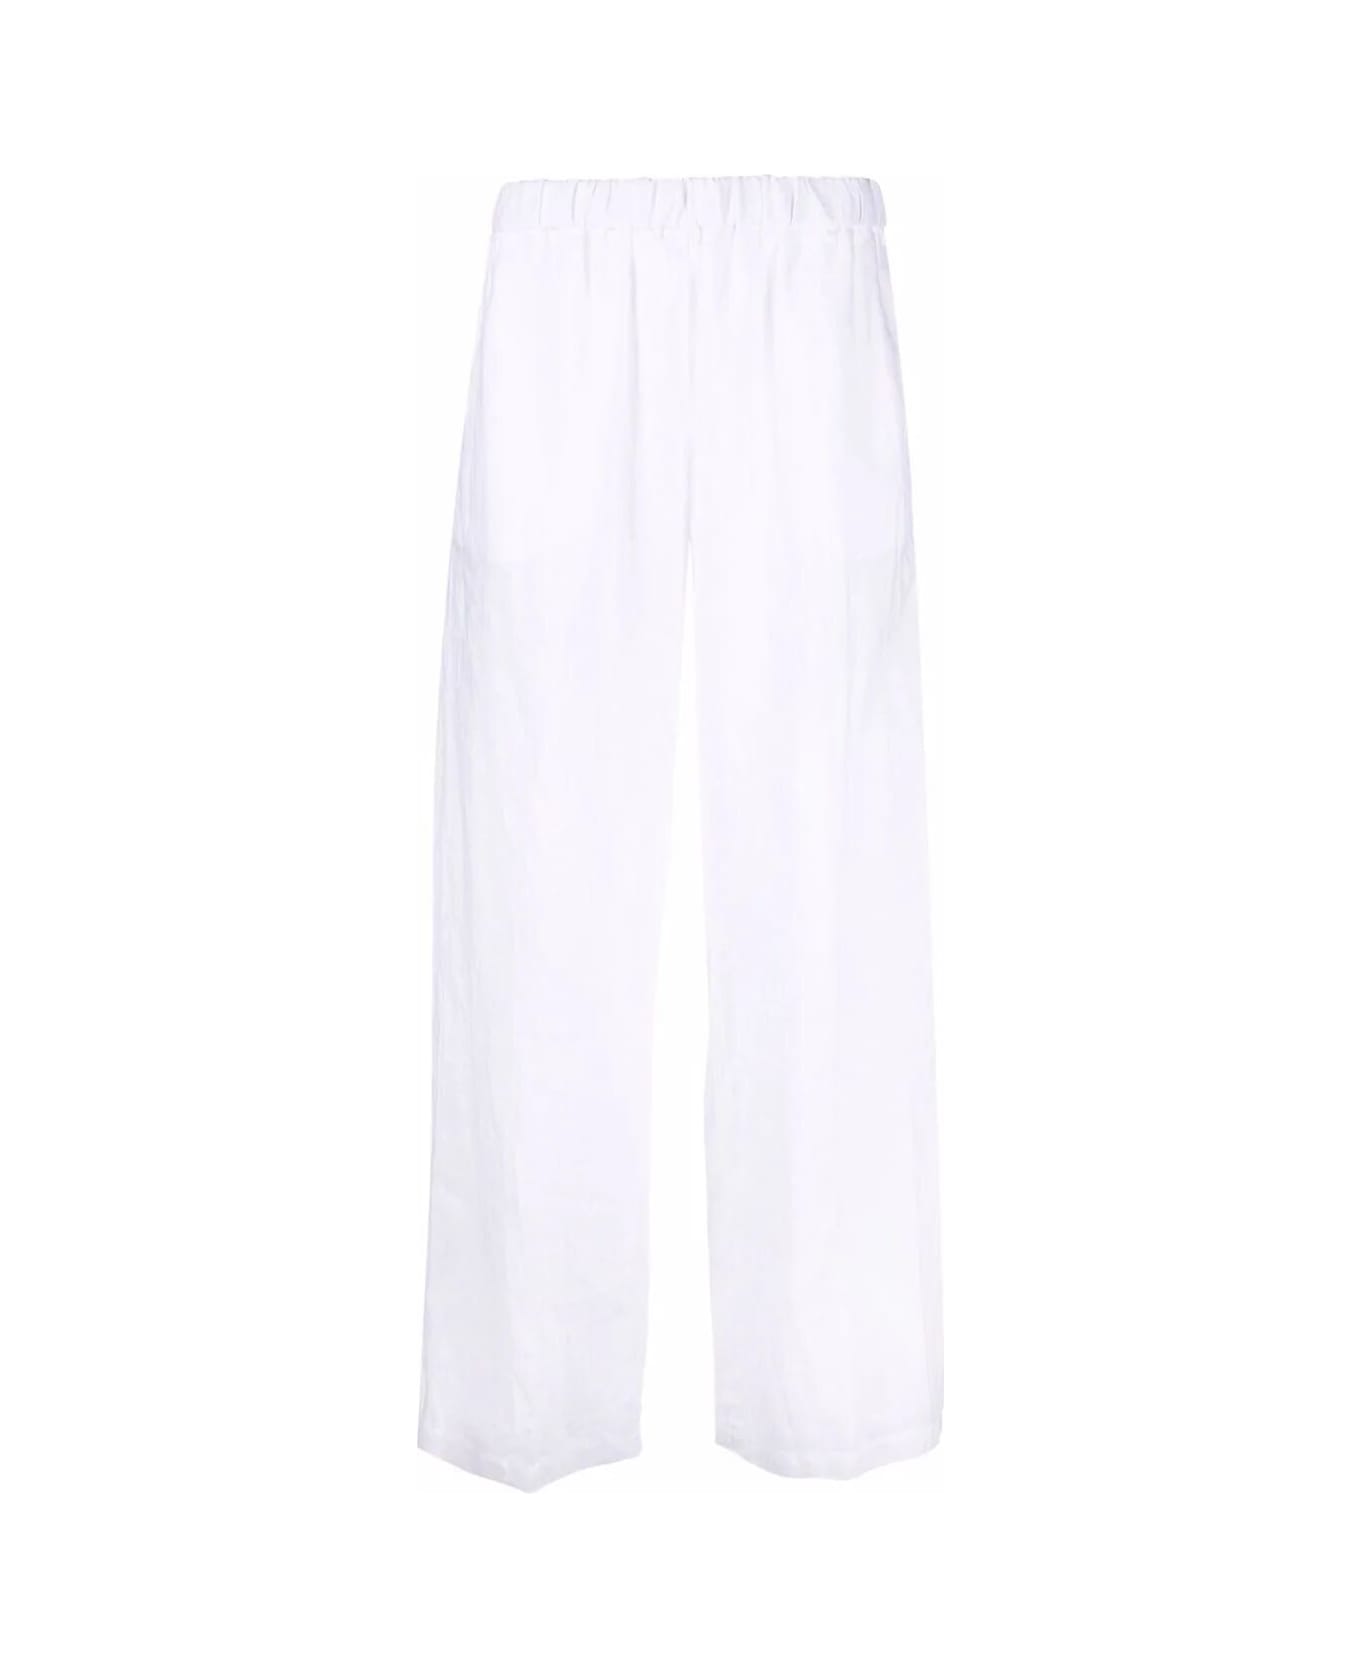 Aspesi Mod 0128 Pants - White